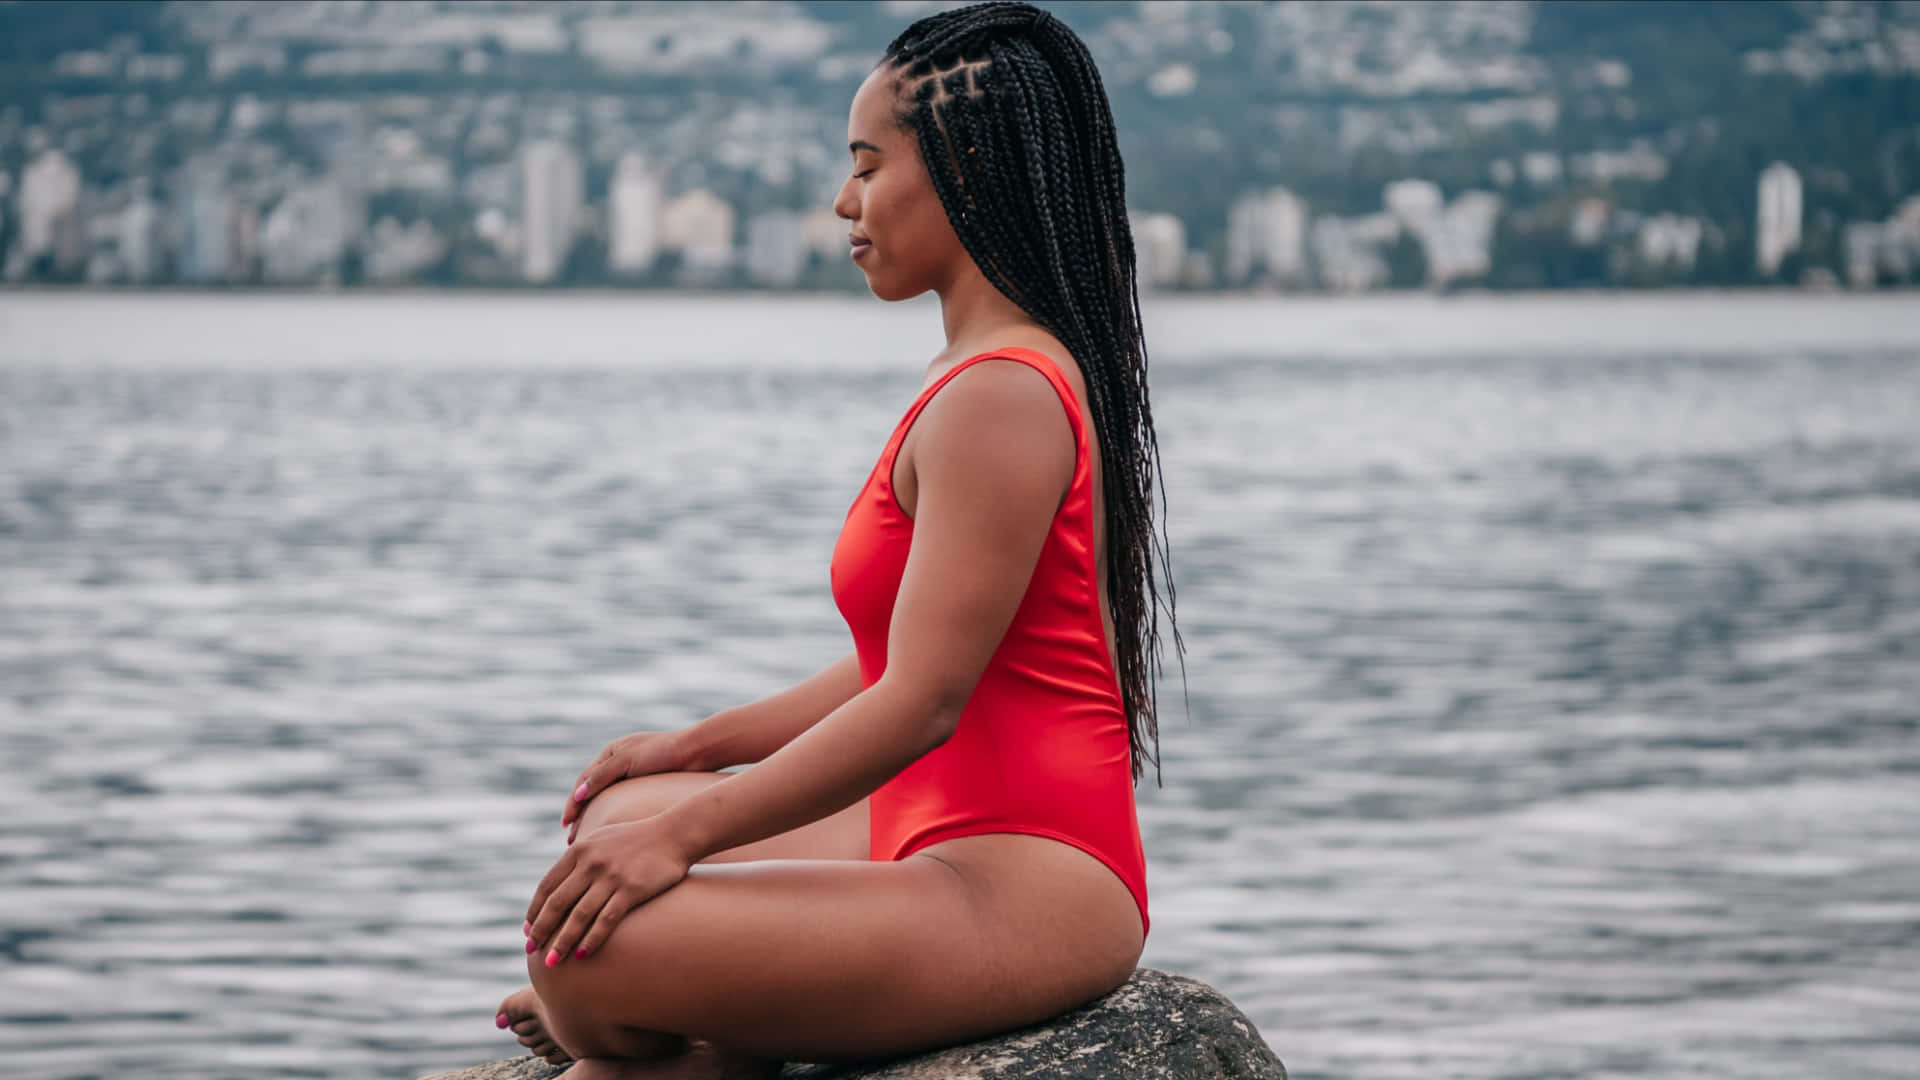 Elegant Swimsuit Model Meditating on the Beach Wallpaper